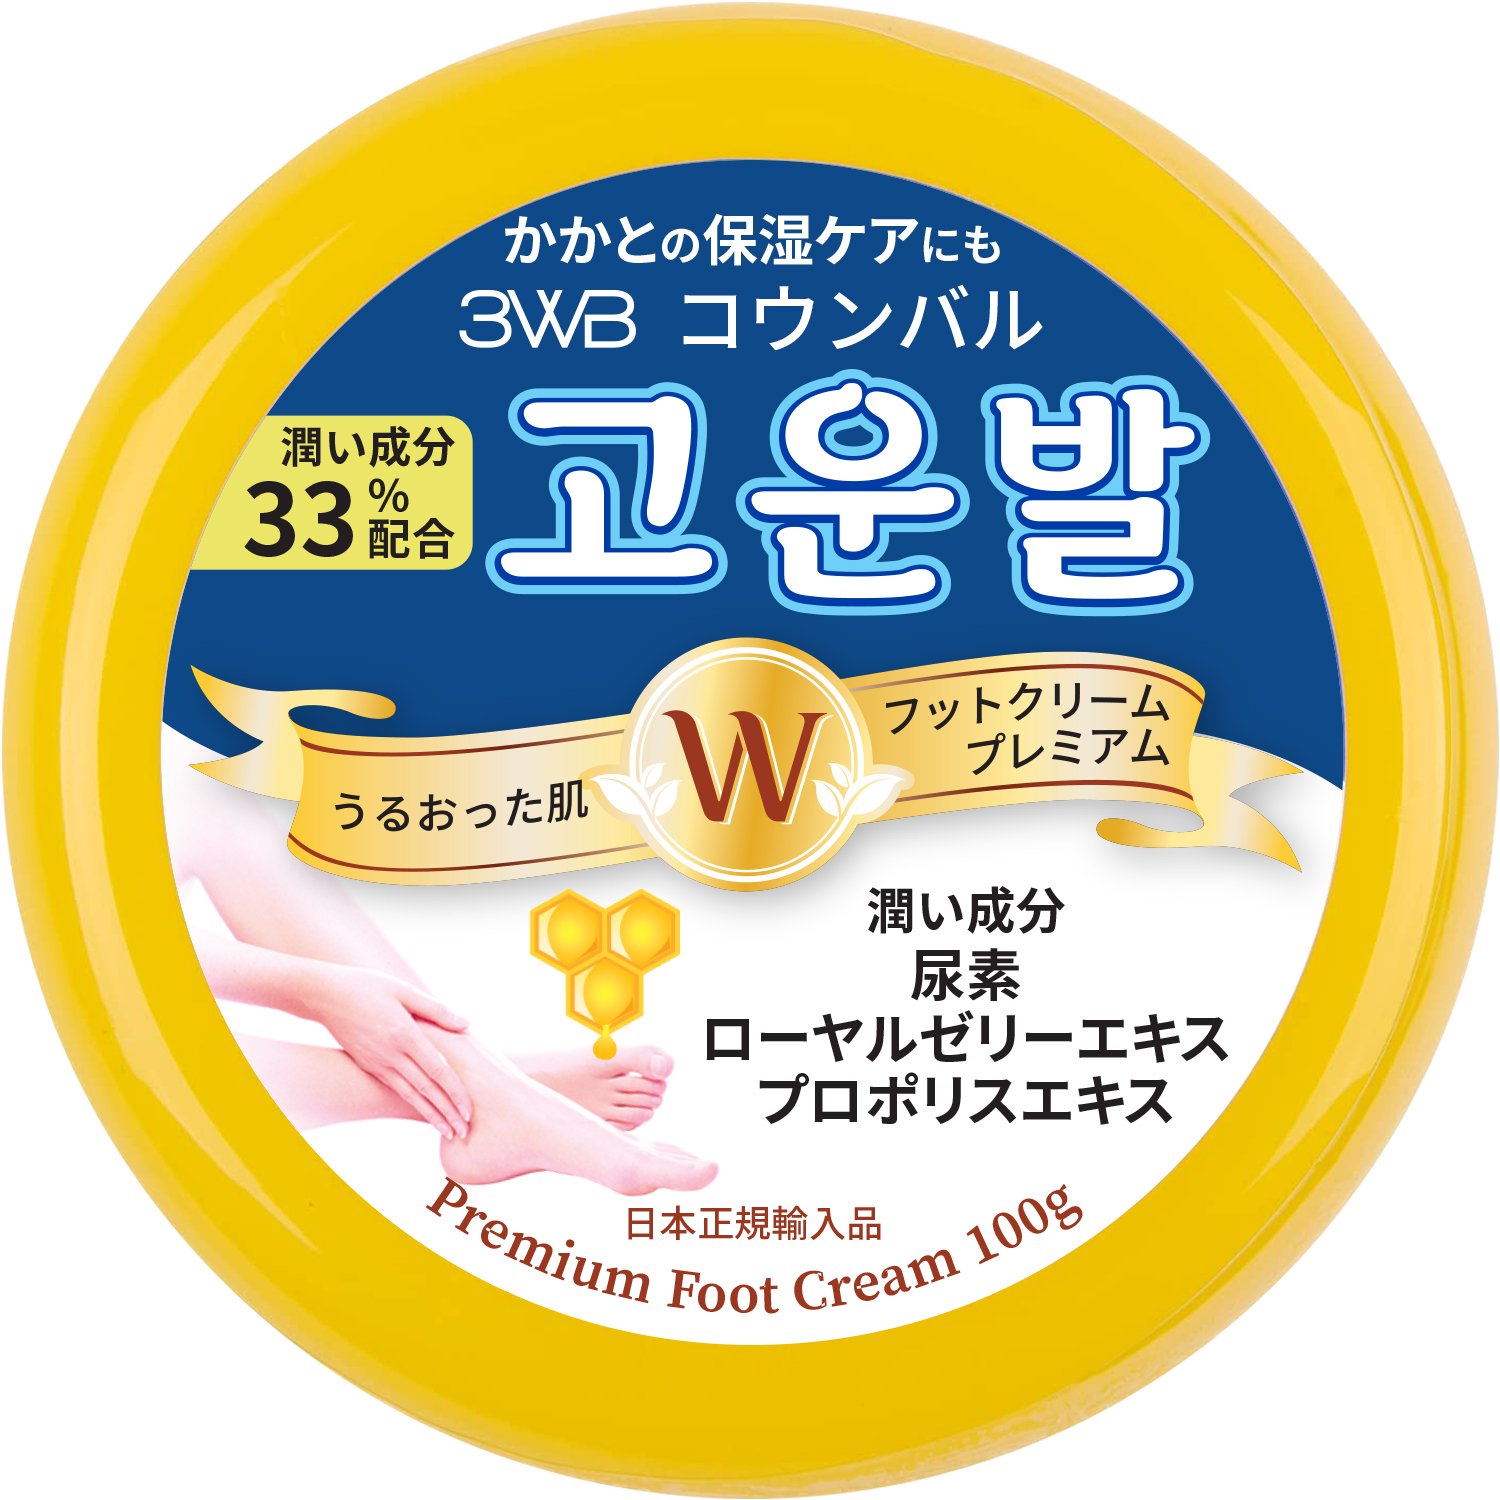 フットクリーム プレミアム コウンバル 黄色 日本正規輸入品 韓国 かかと 保湿 角質